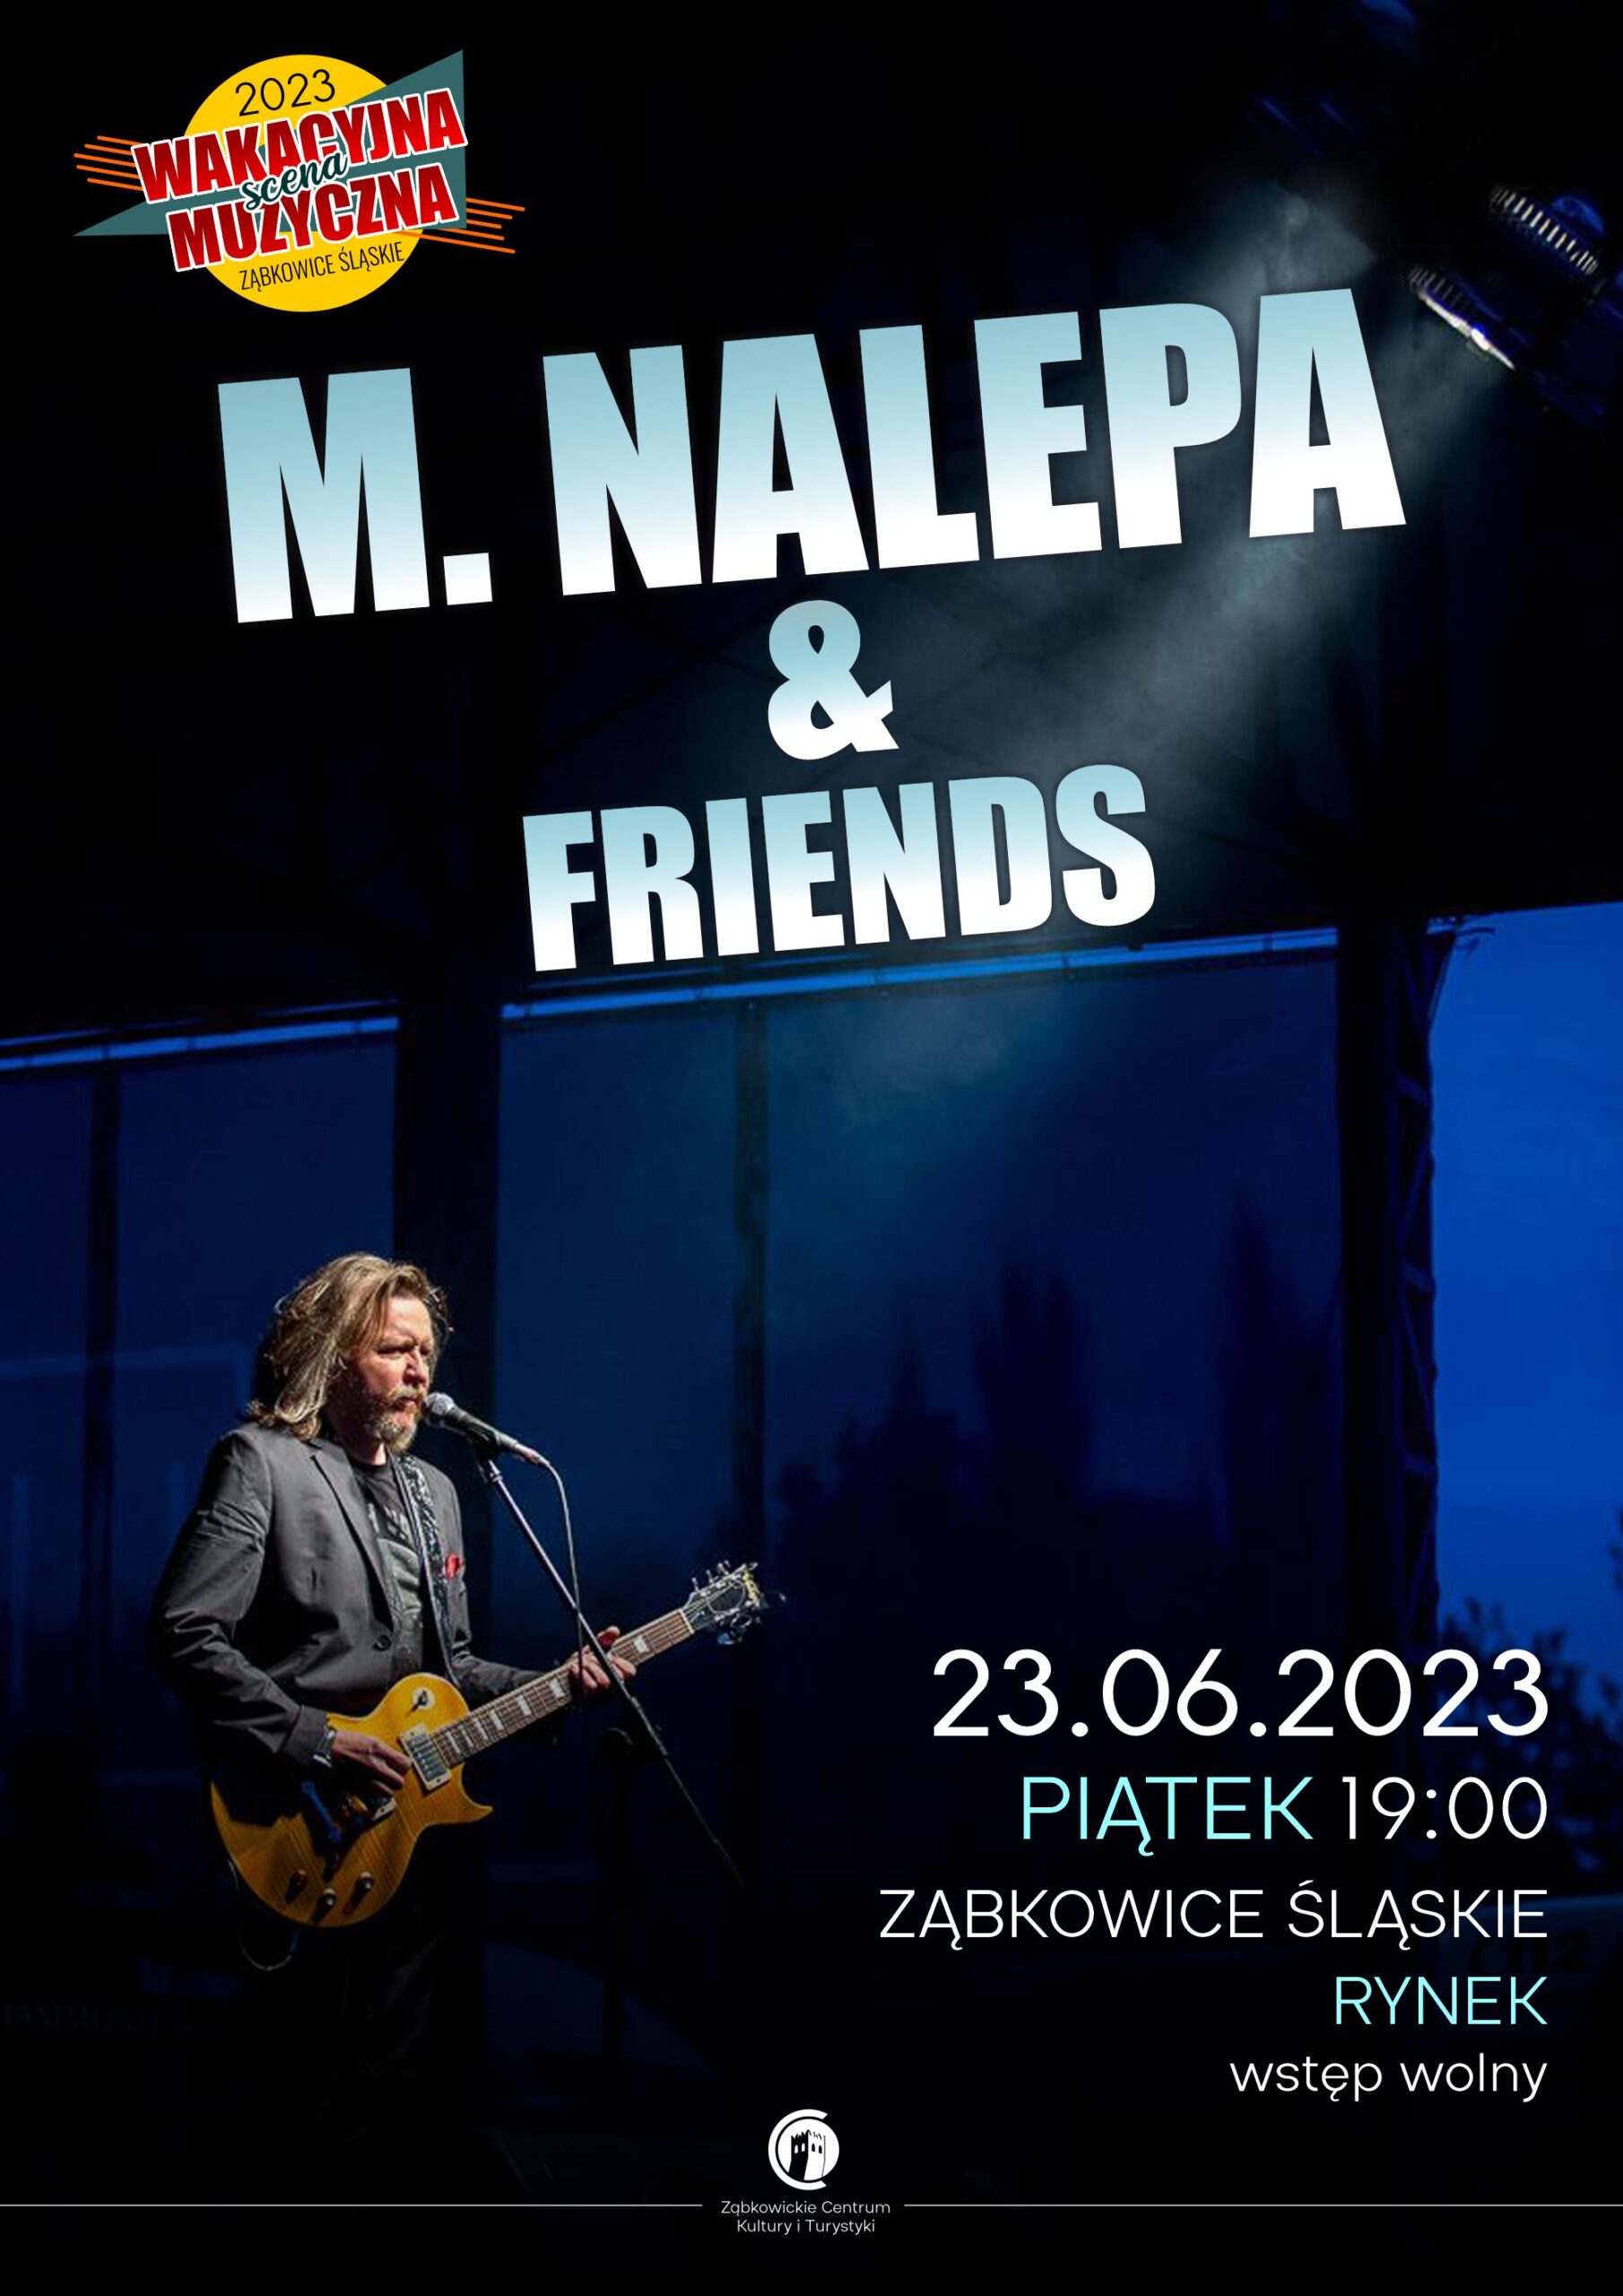 Plakat informacyjny o koncercie Mirona Nalepy & Friends 26.06.2023 o godzinie 19:00 na rynku w Ząbkowicach Śląskich.